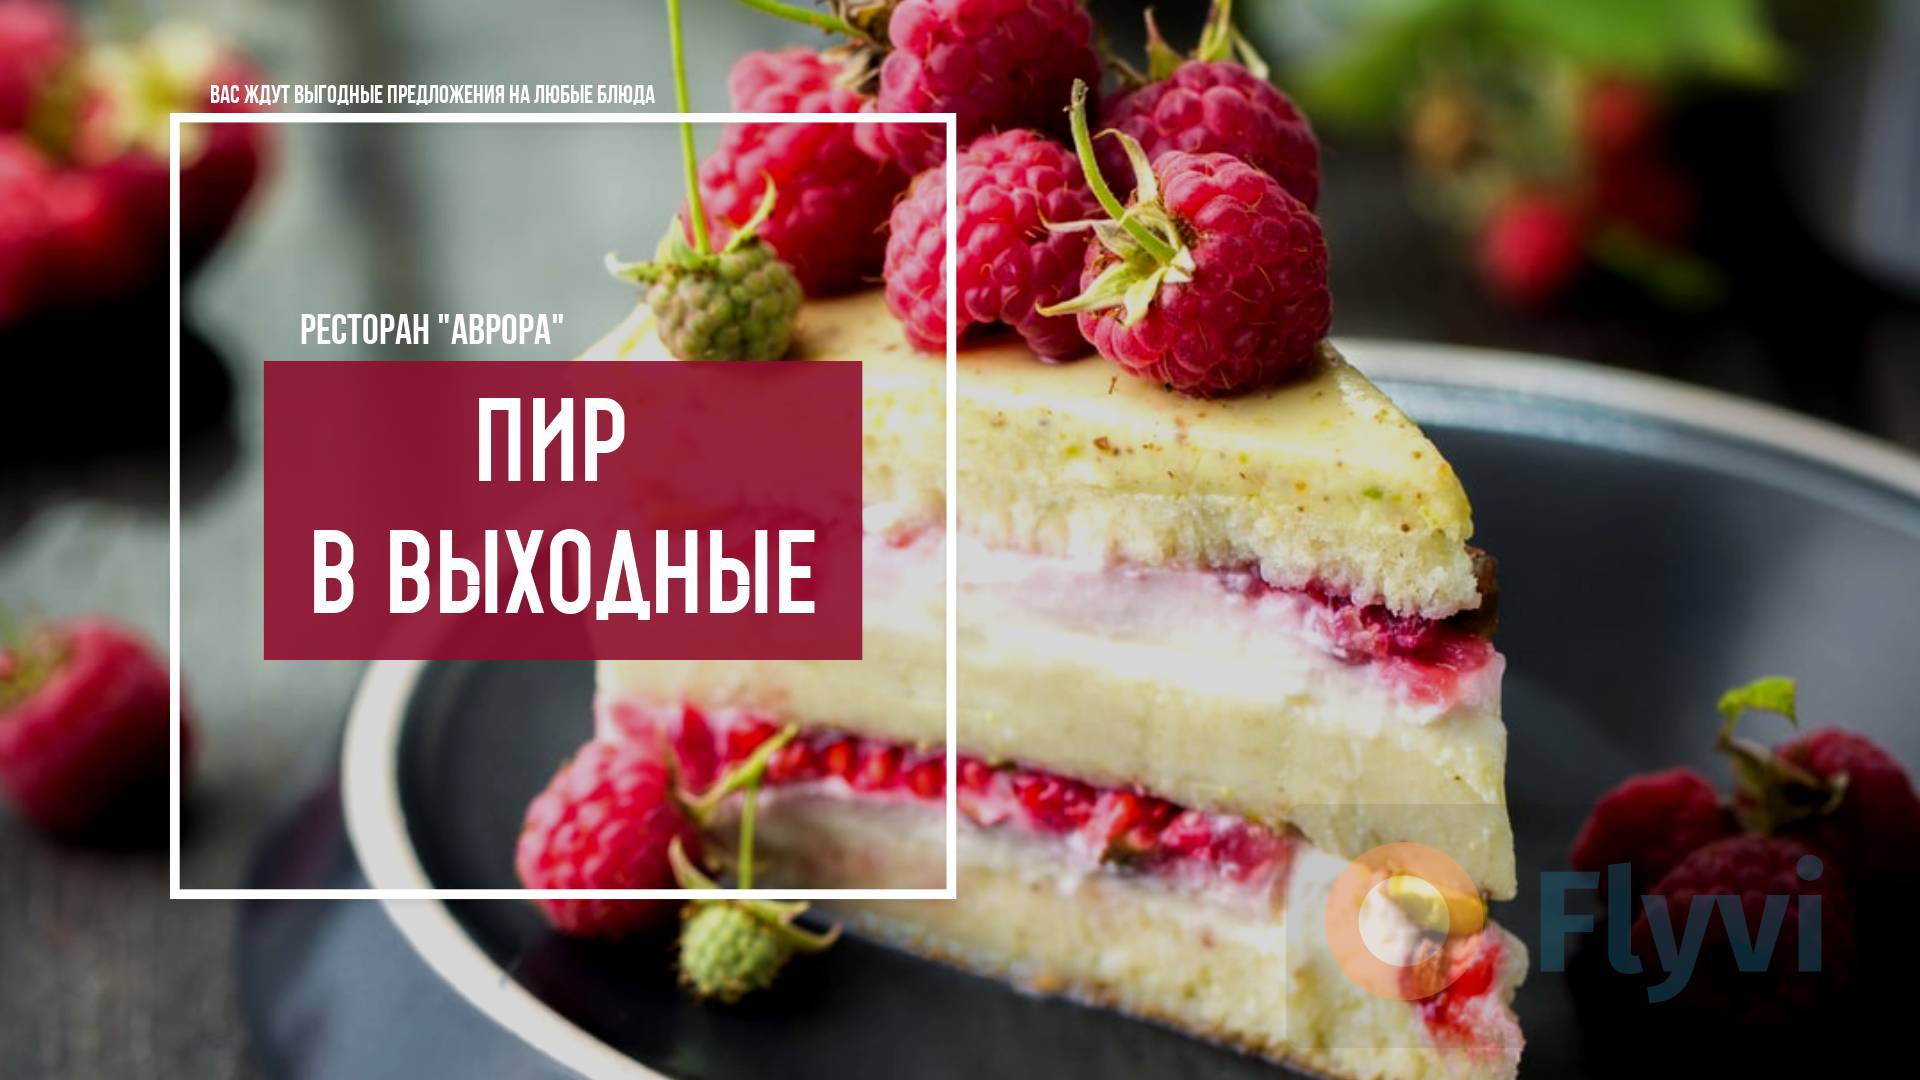 Нежный малиновый торт с бисквитом и кремом, украшенный свежими ягодами со слоганом Пир в выходные для рекламы ресторана в соцсетях